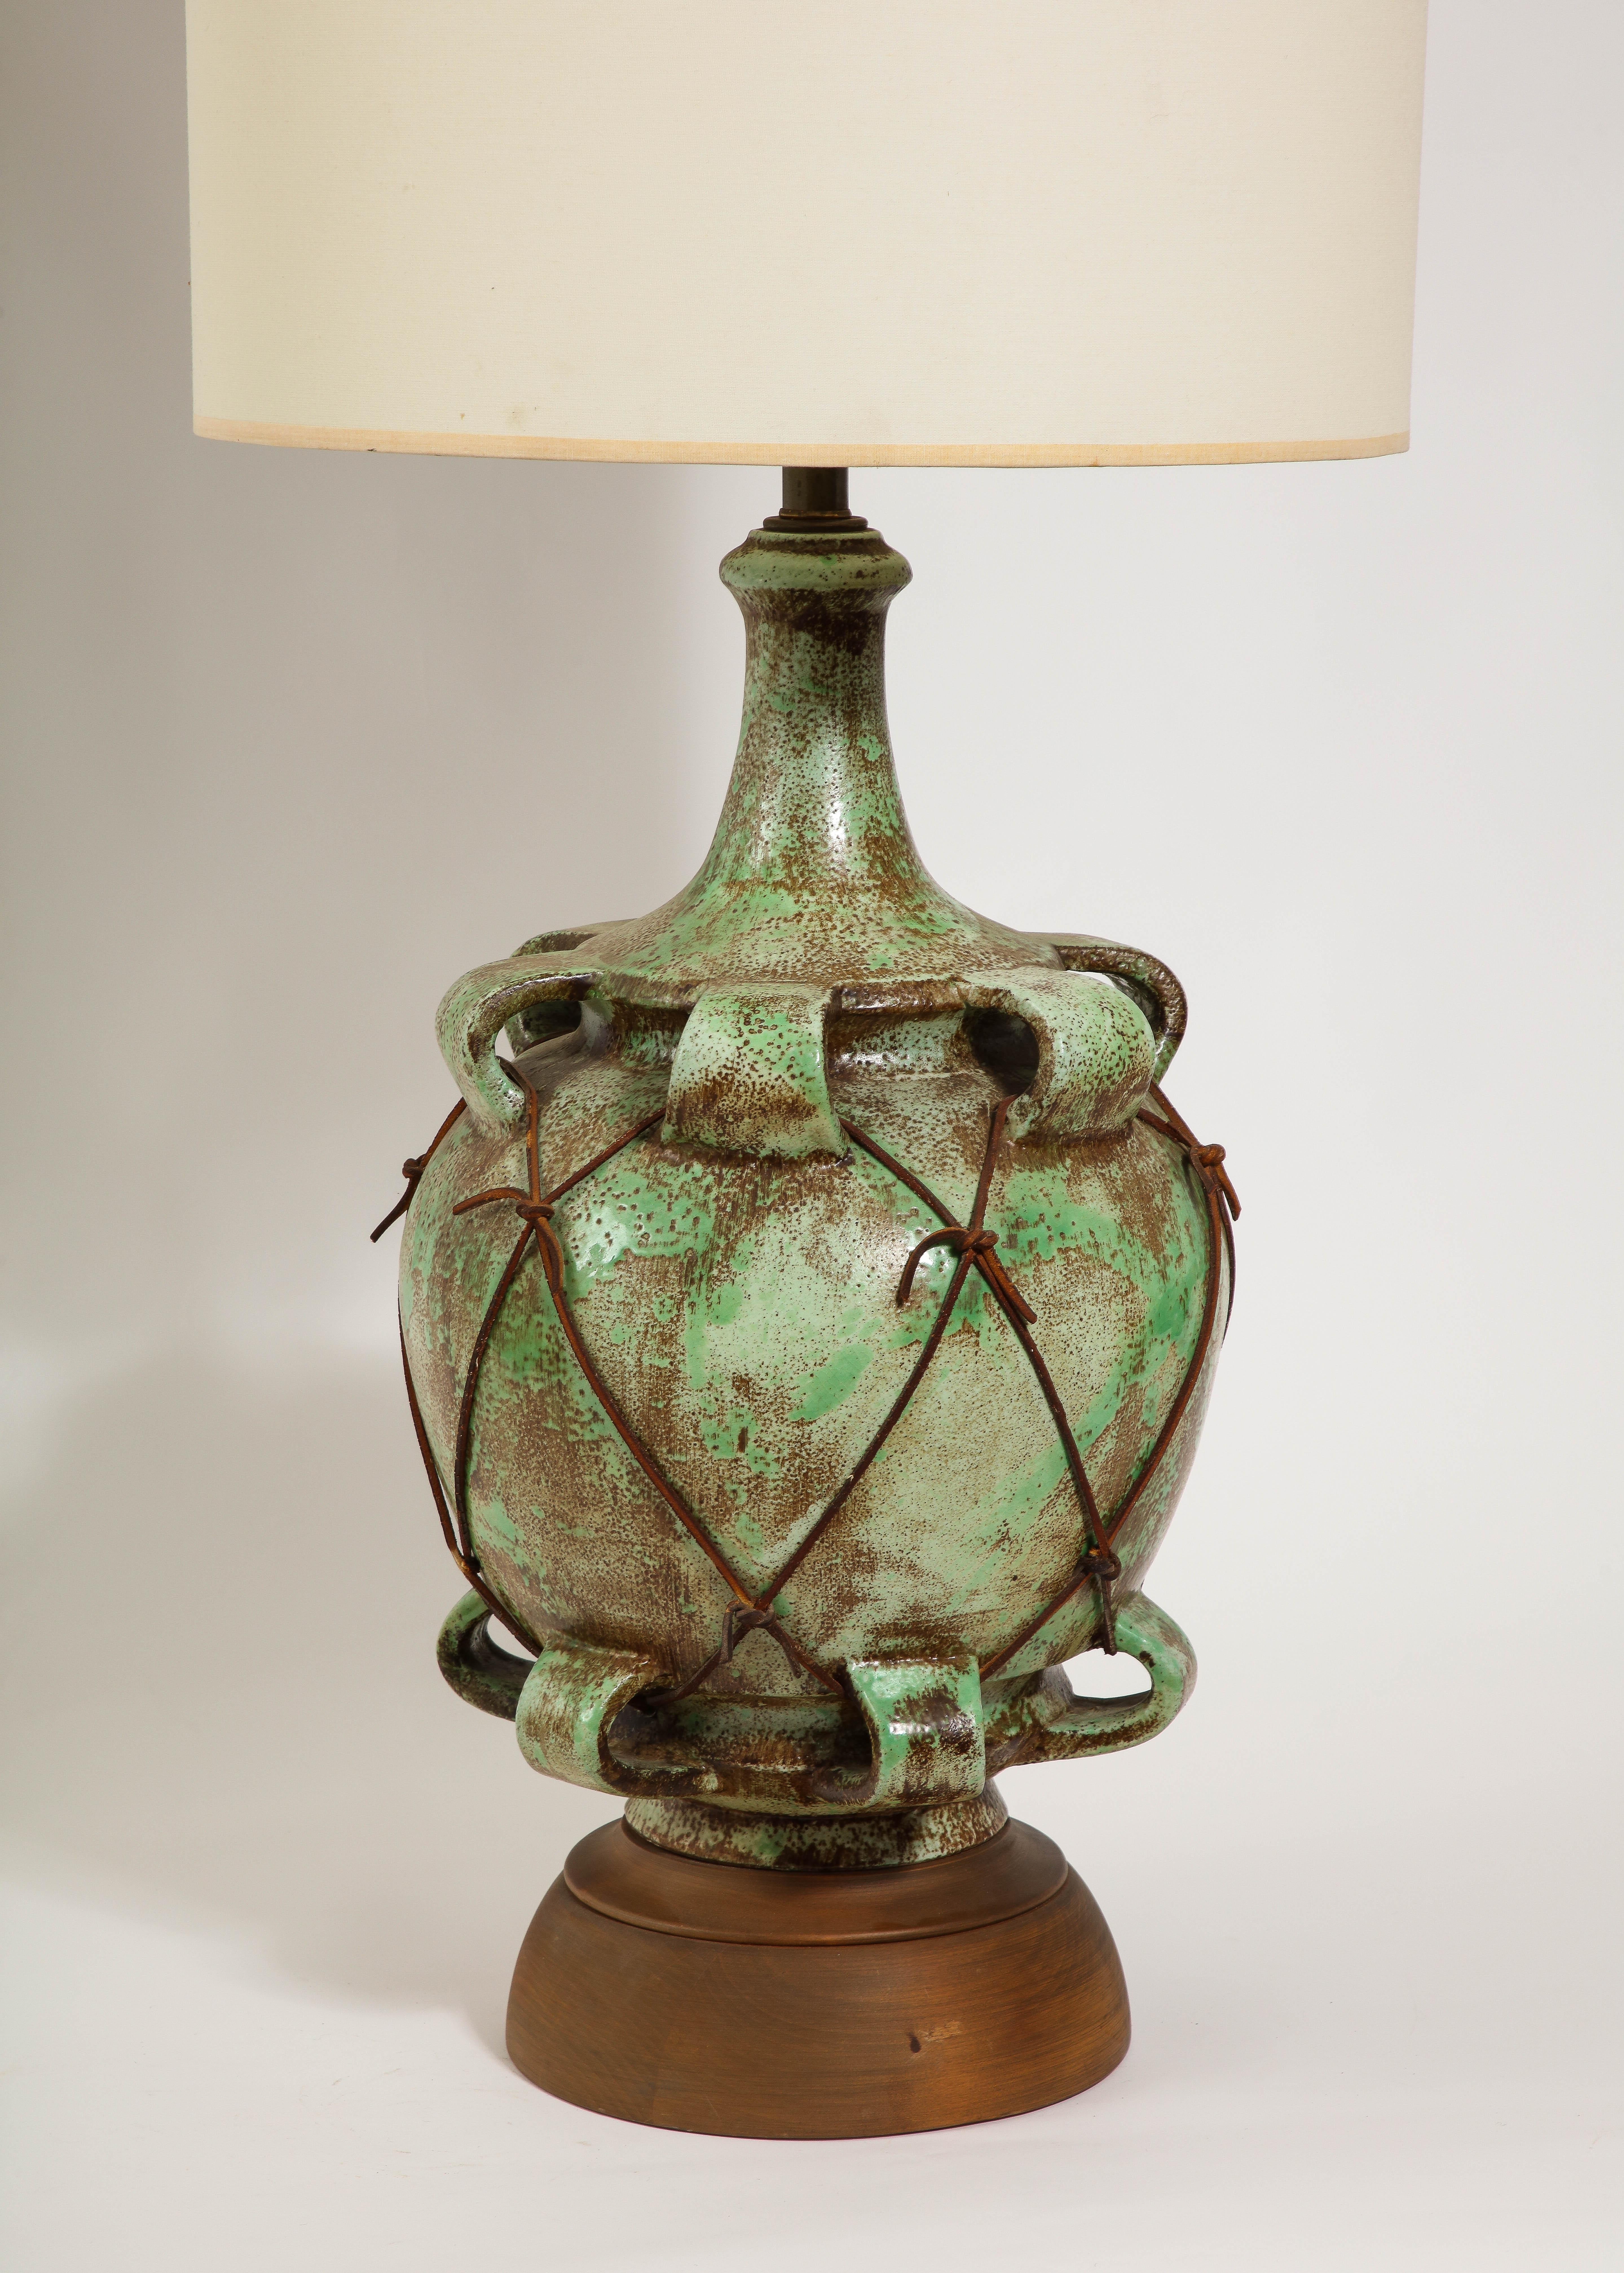 Große Keramiklampe auf Nussbaumsockel, verziert mit Keramikloops, die durch eine Lederschnur miteinander verbunden sind.

Nur 30x12 Basis